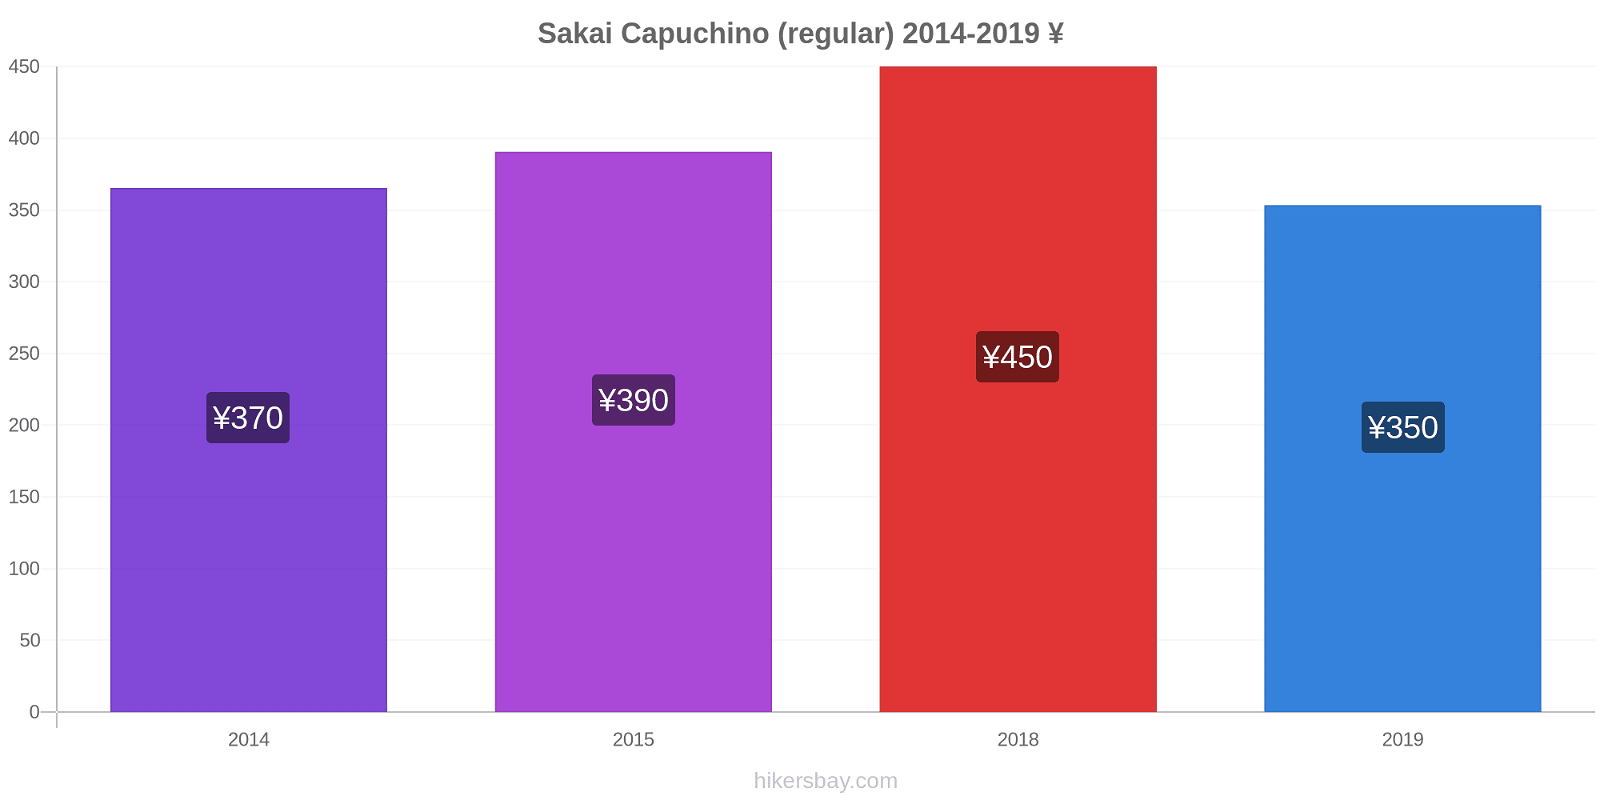 Sakai cambios de precios Capuchino (regular) hikersbay.com